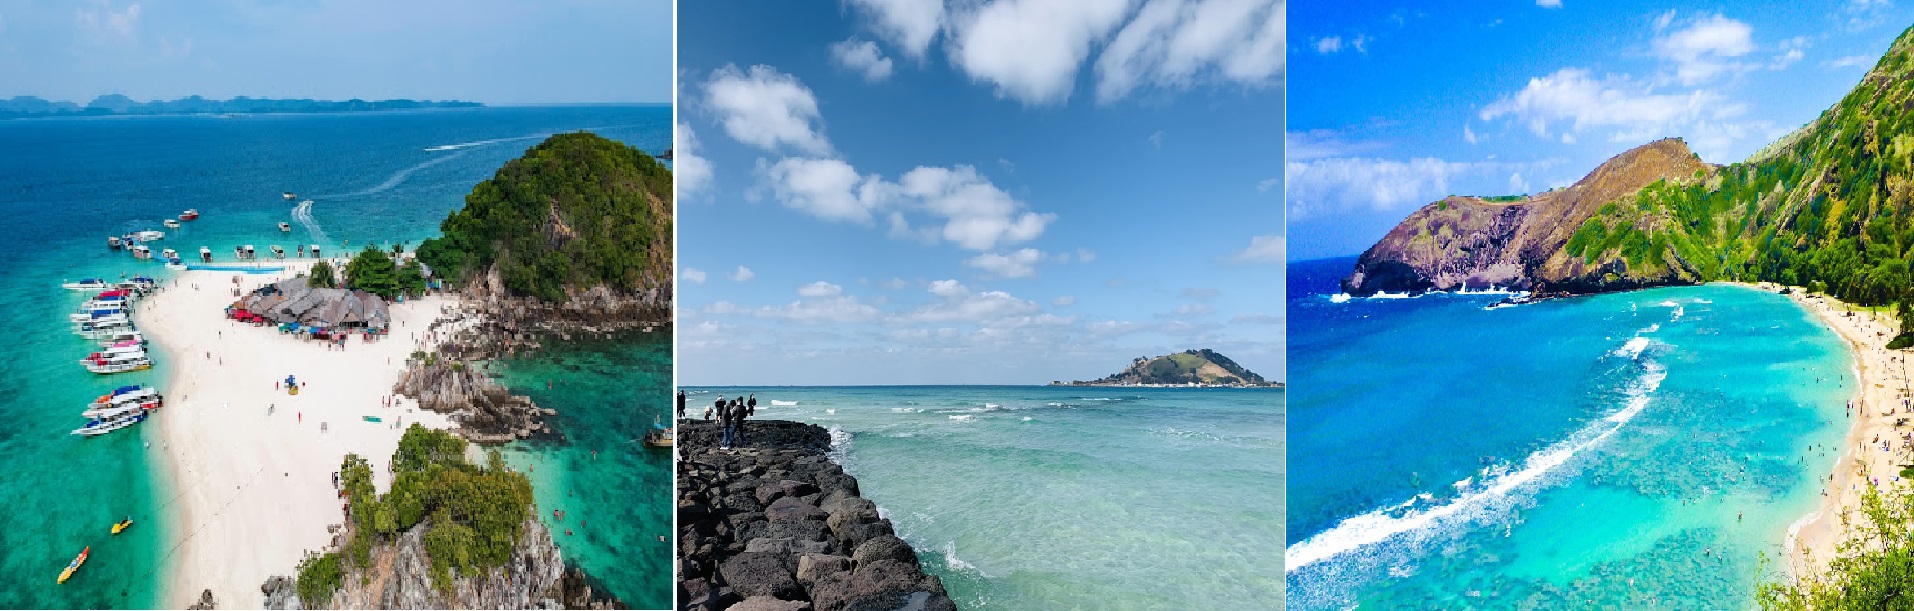 Bãi Kem - một trong top 50 bãi biển đẹp nhất hành tinh do CNN bình chọn - thích hợp làm điểm đến cho kì nghỉ dưỡng, chăm sóc sức khỏe của du khách